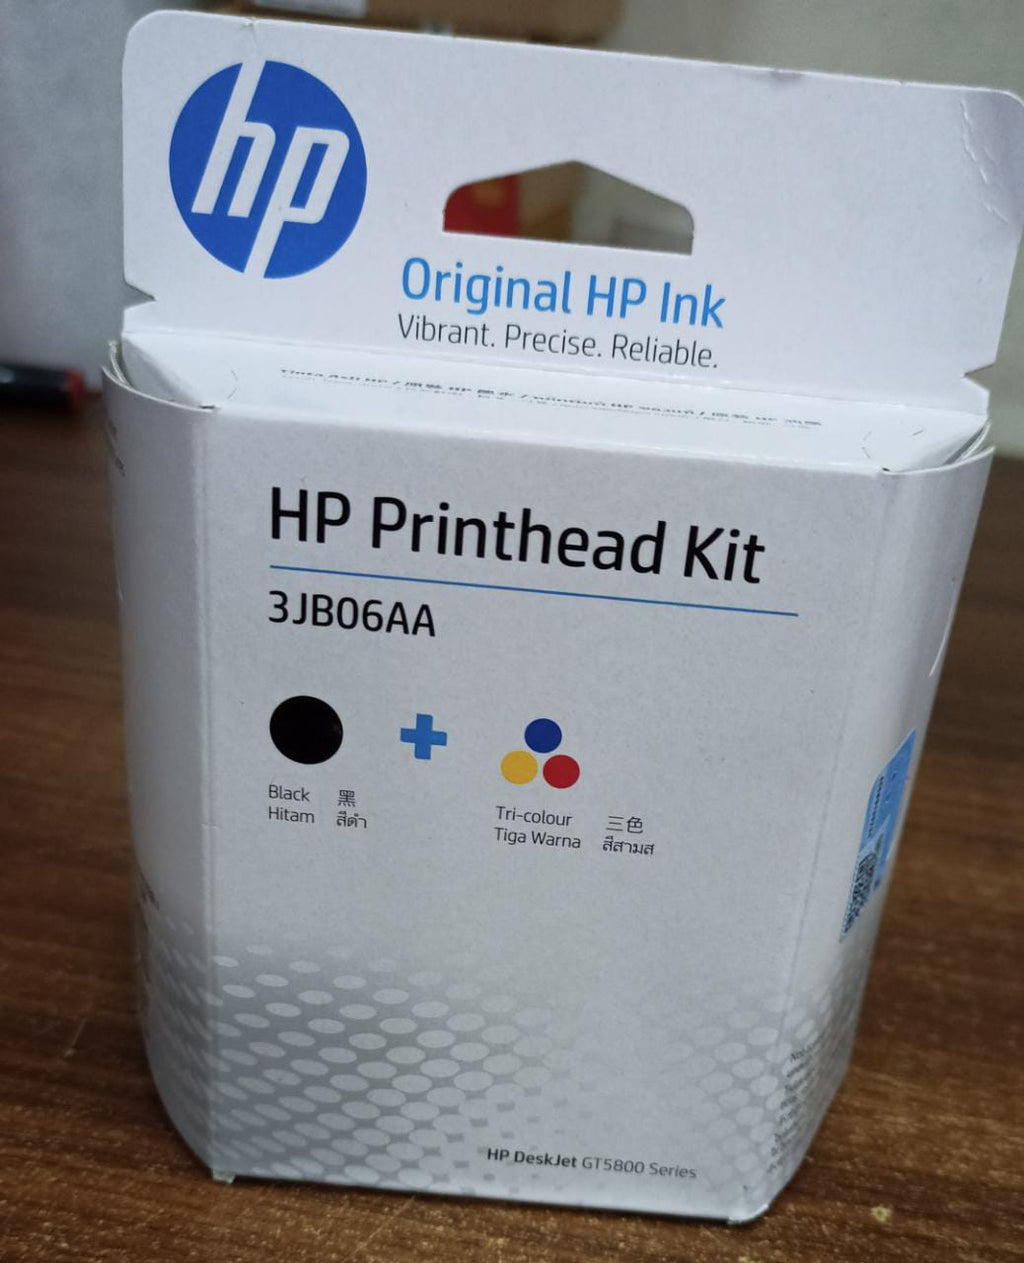 HP Print Head Kit 319/419/5810 Deskjet GT5800 Series Black & Tri Color Tiga Warna